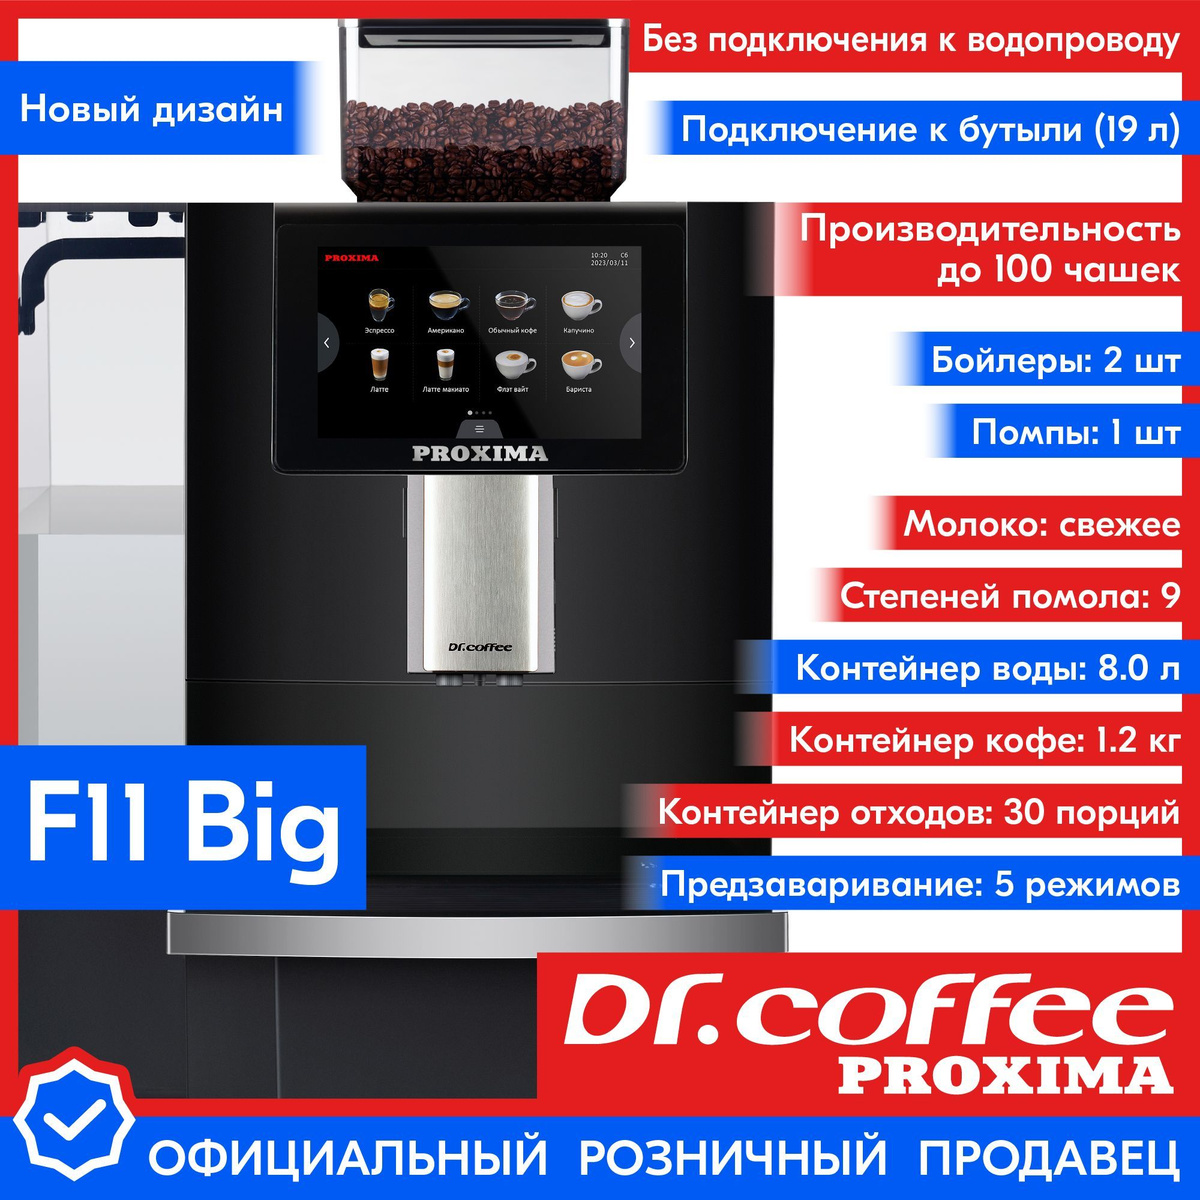 Профессиональная кофемашина Dr.coffee PROXIMA F11 Big (без подключения к водопроводу)